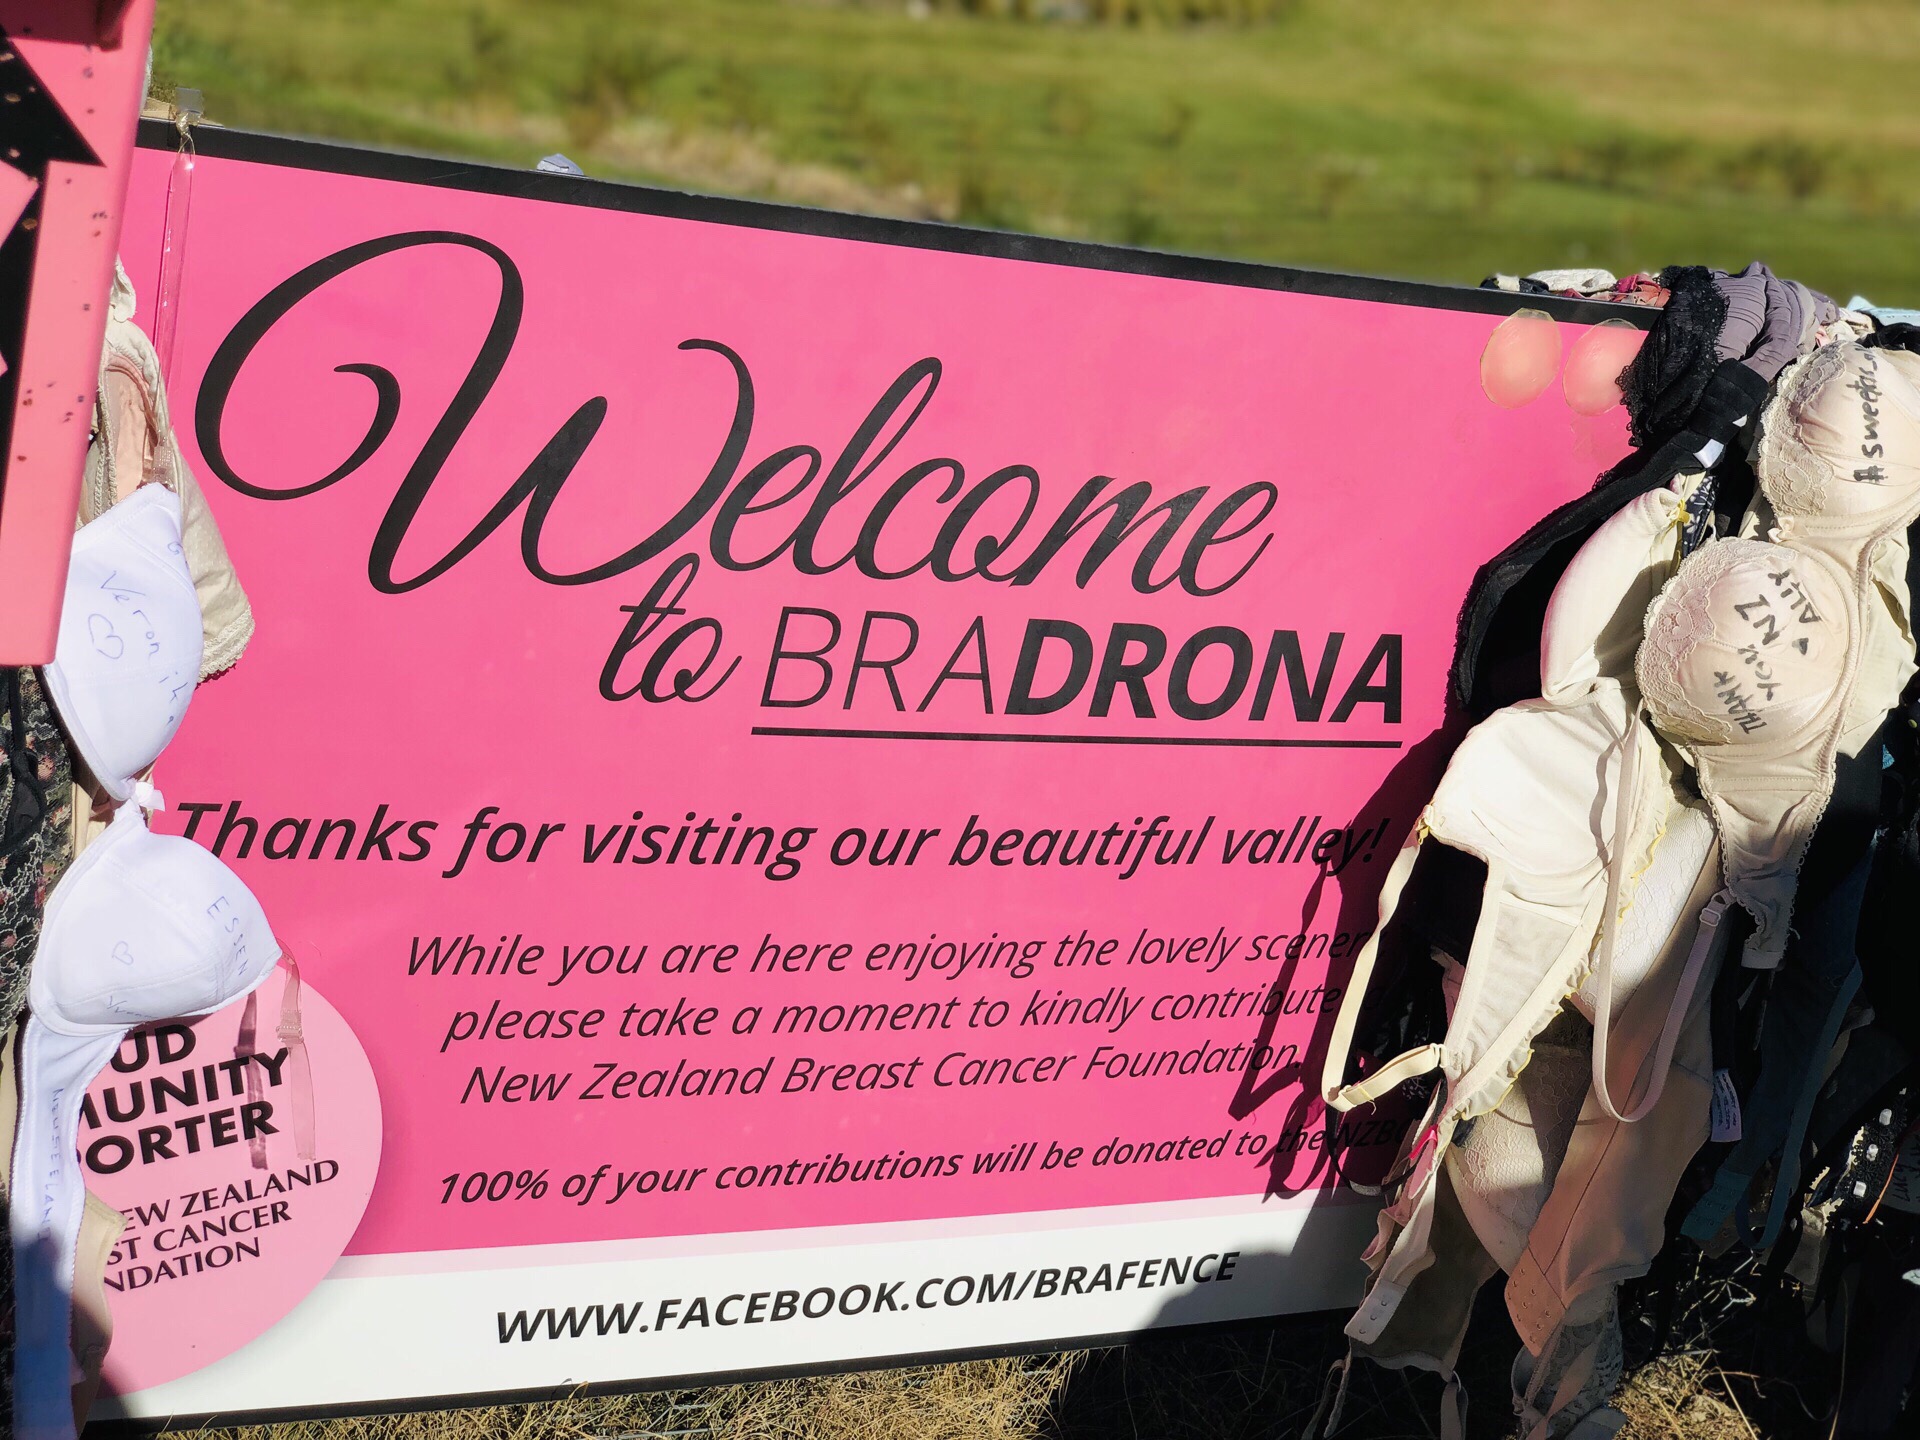 从皇后镇到瓦纳卡的途中有一个挂满了内衣的篱笆Bradrona，Bradrona存在的意义让人们提高对